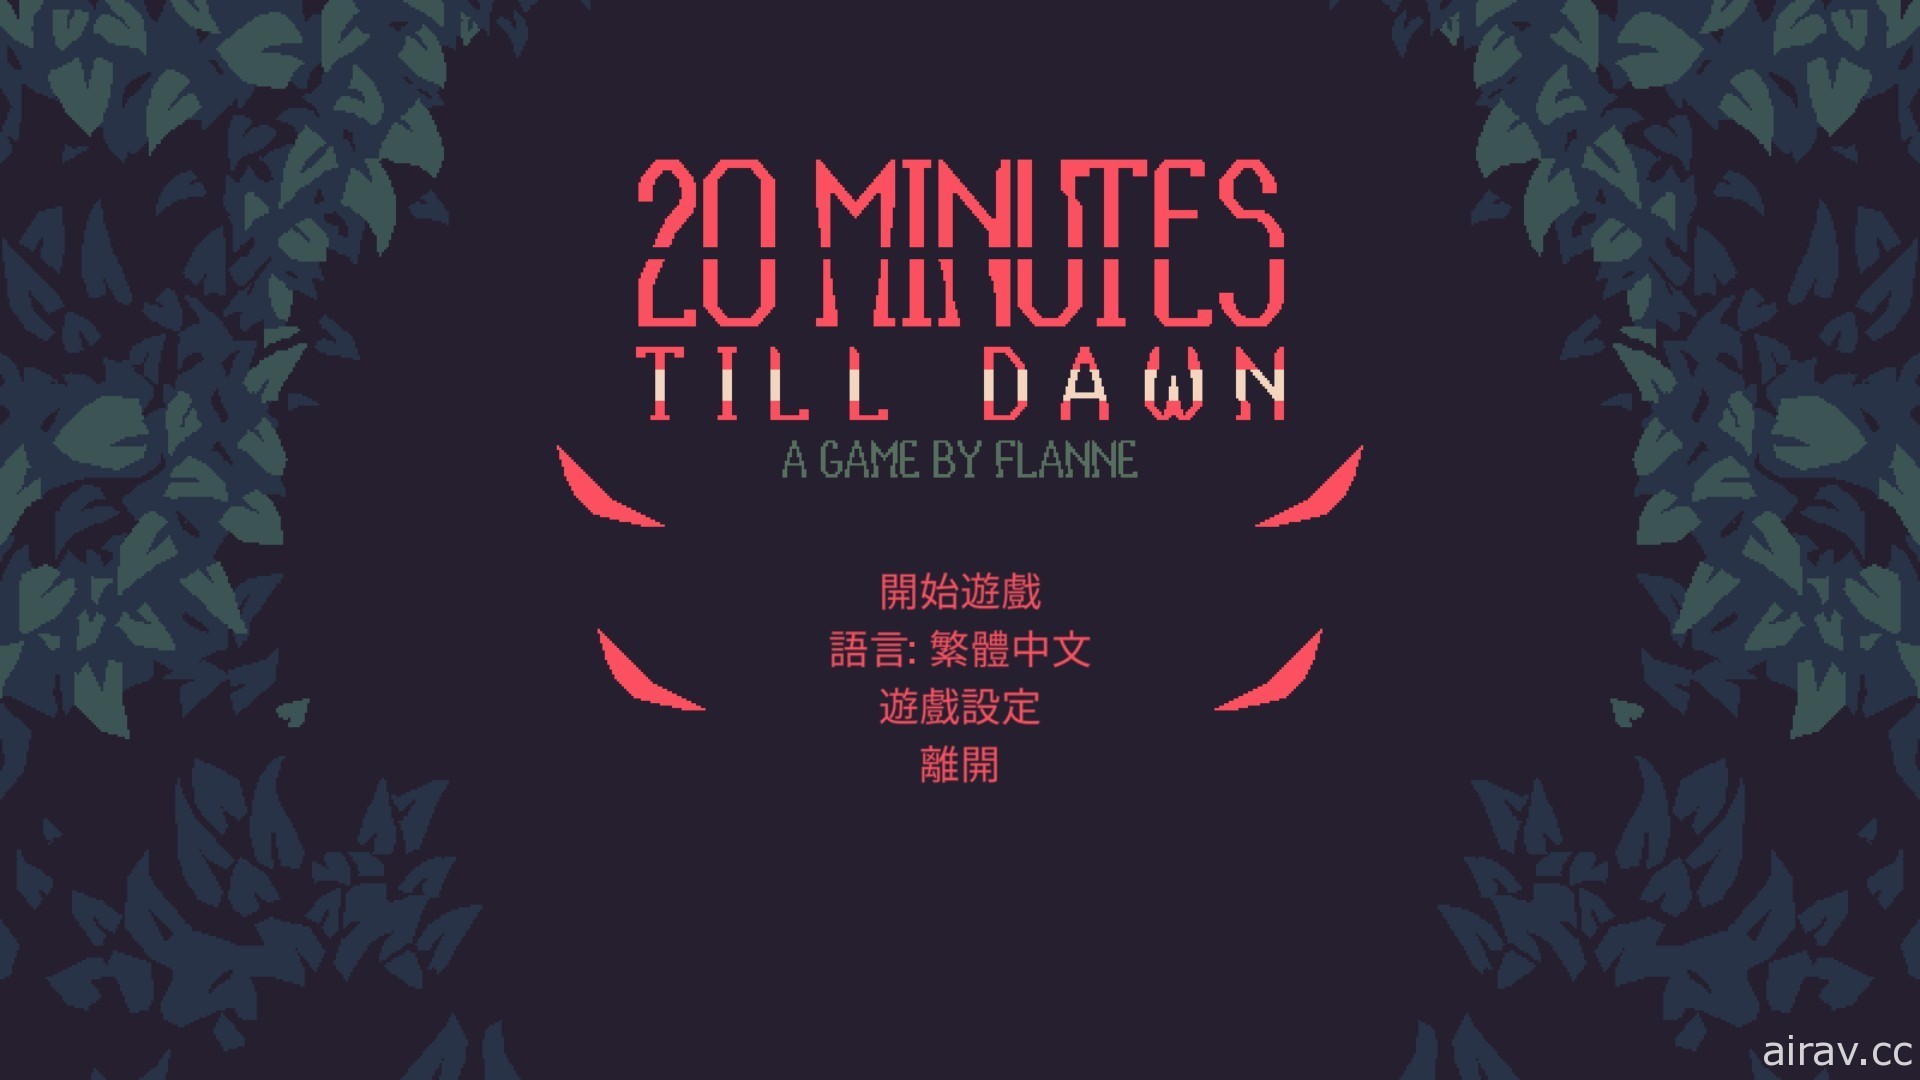 生存射击游戏《20 Minutes Till Dawn》预定 8 日展开抢先体验